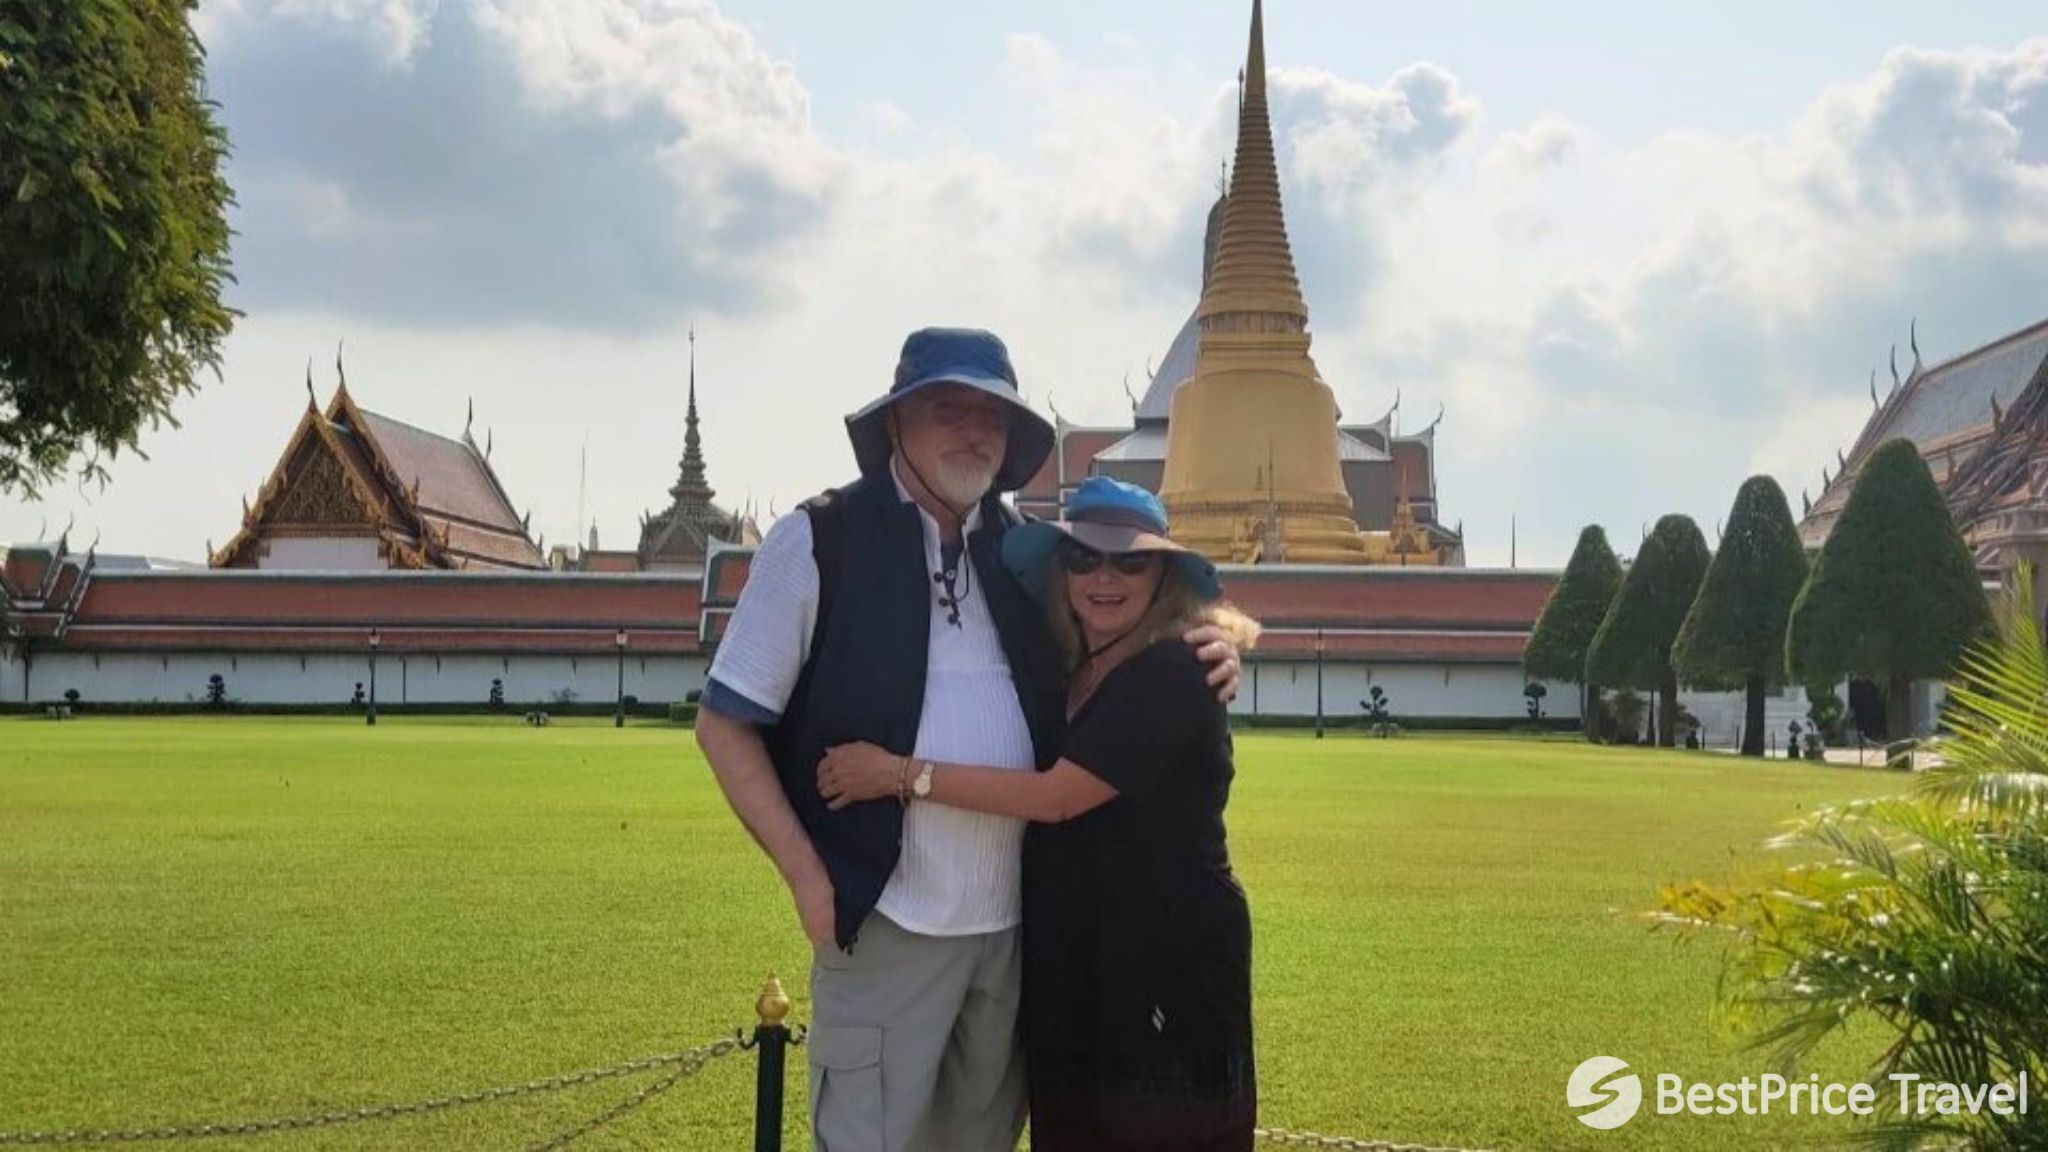 Day 2 Explore Bangkok's Grand Palace